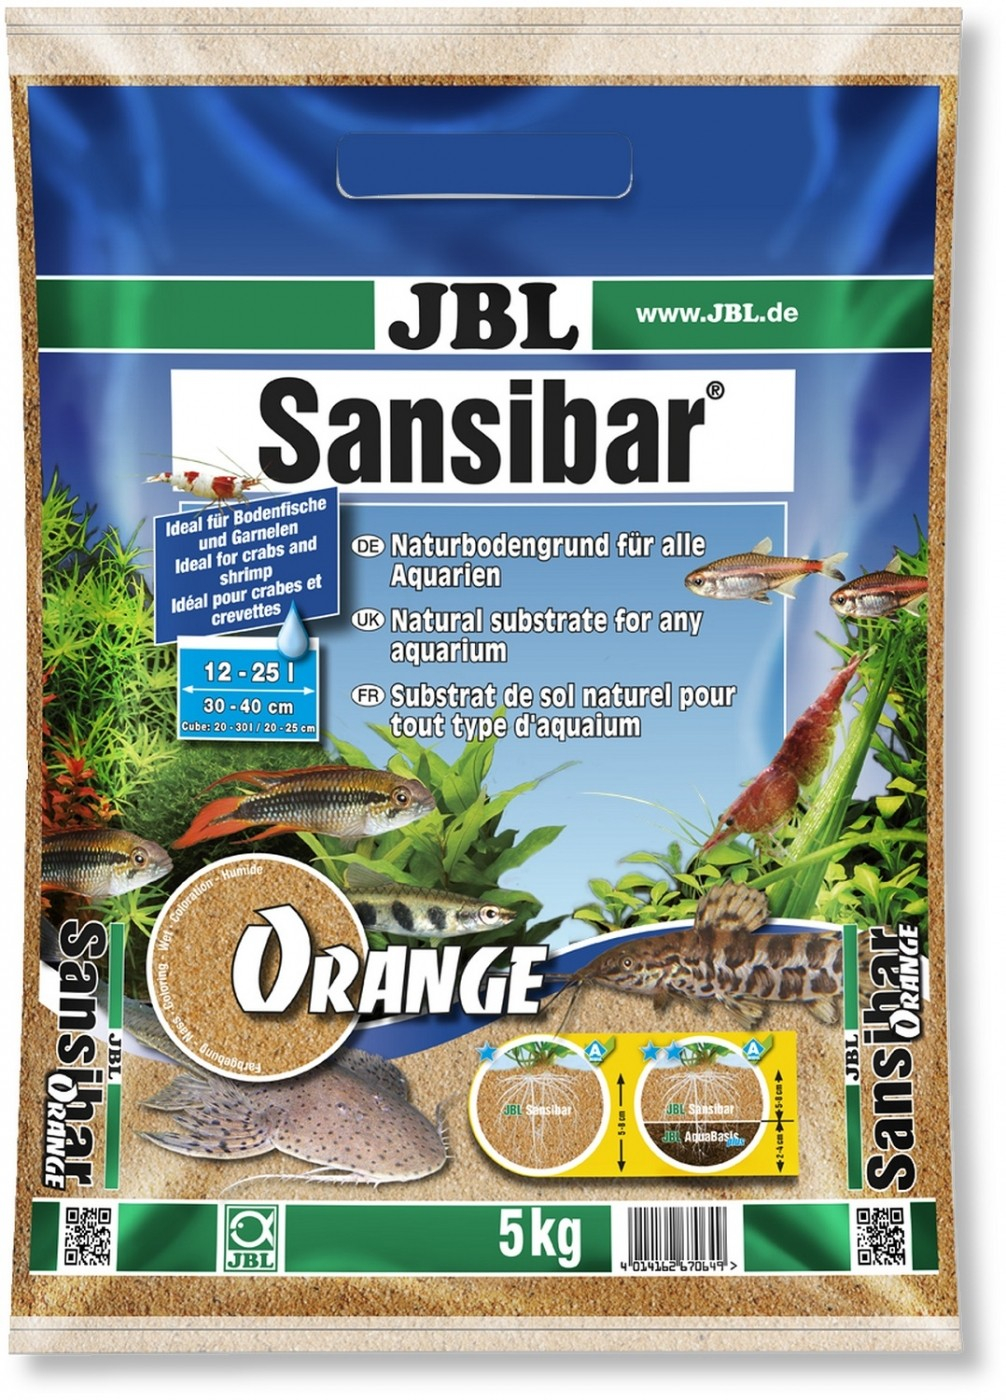 JBL Sansibar Orange